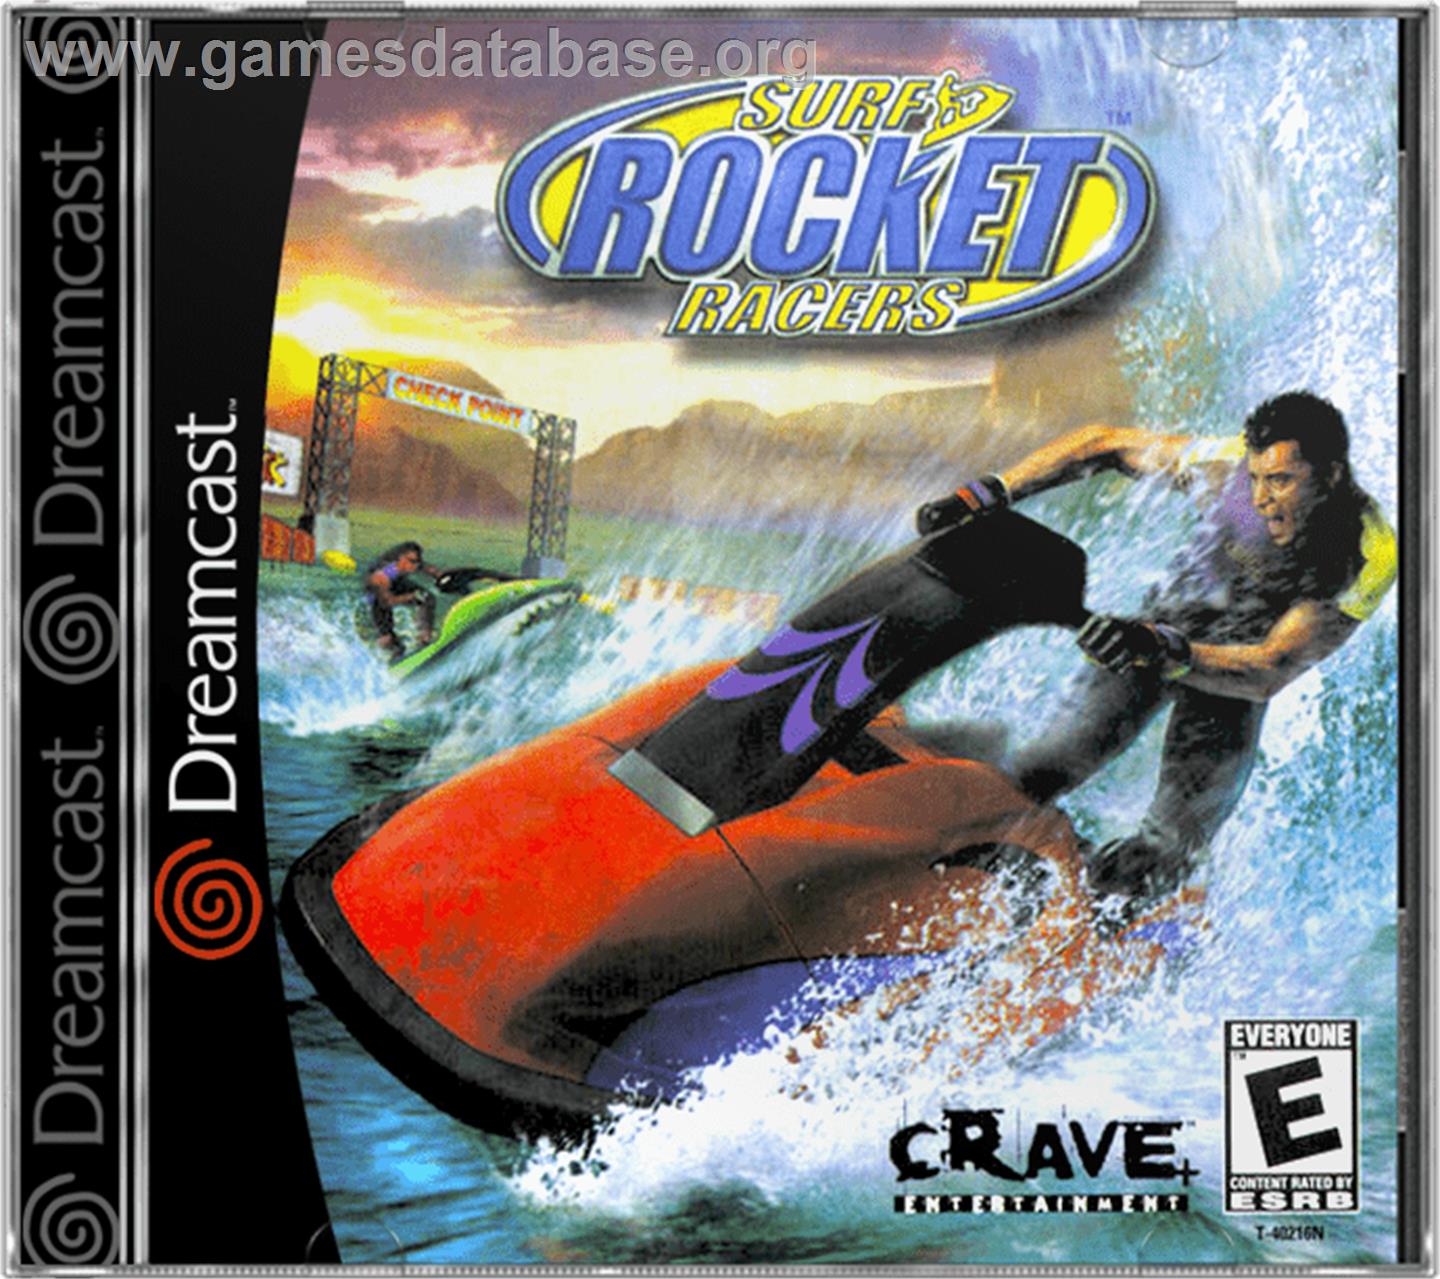 Surf Rocket Racers - Sega Dreamcast - Artwork - Box